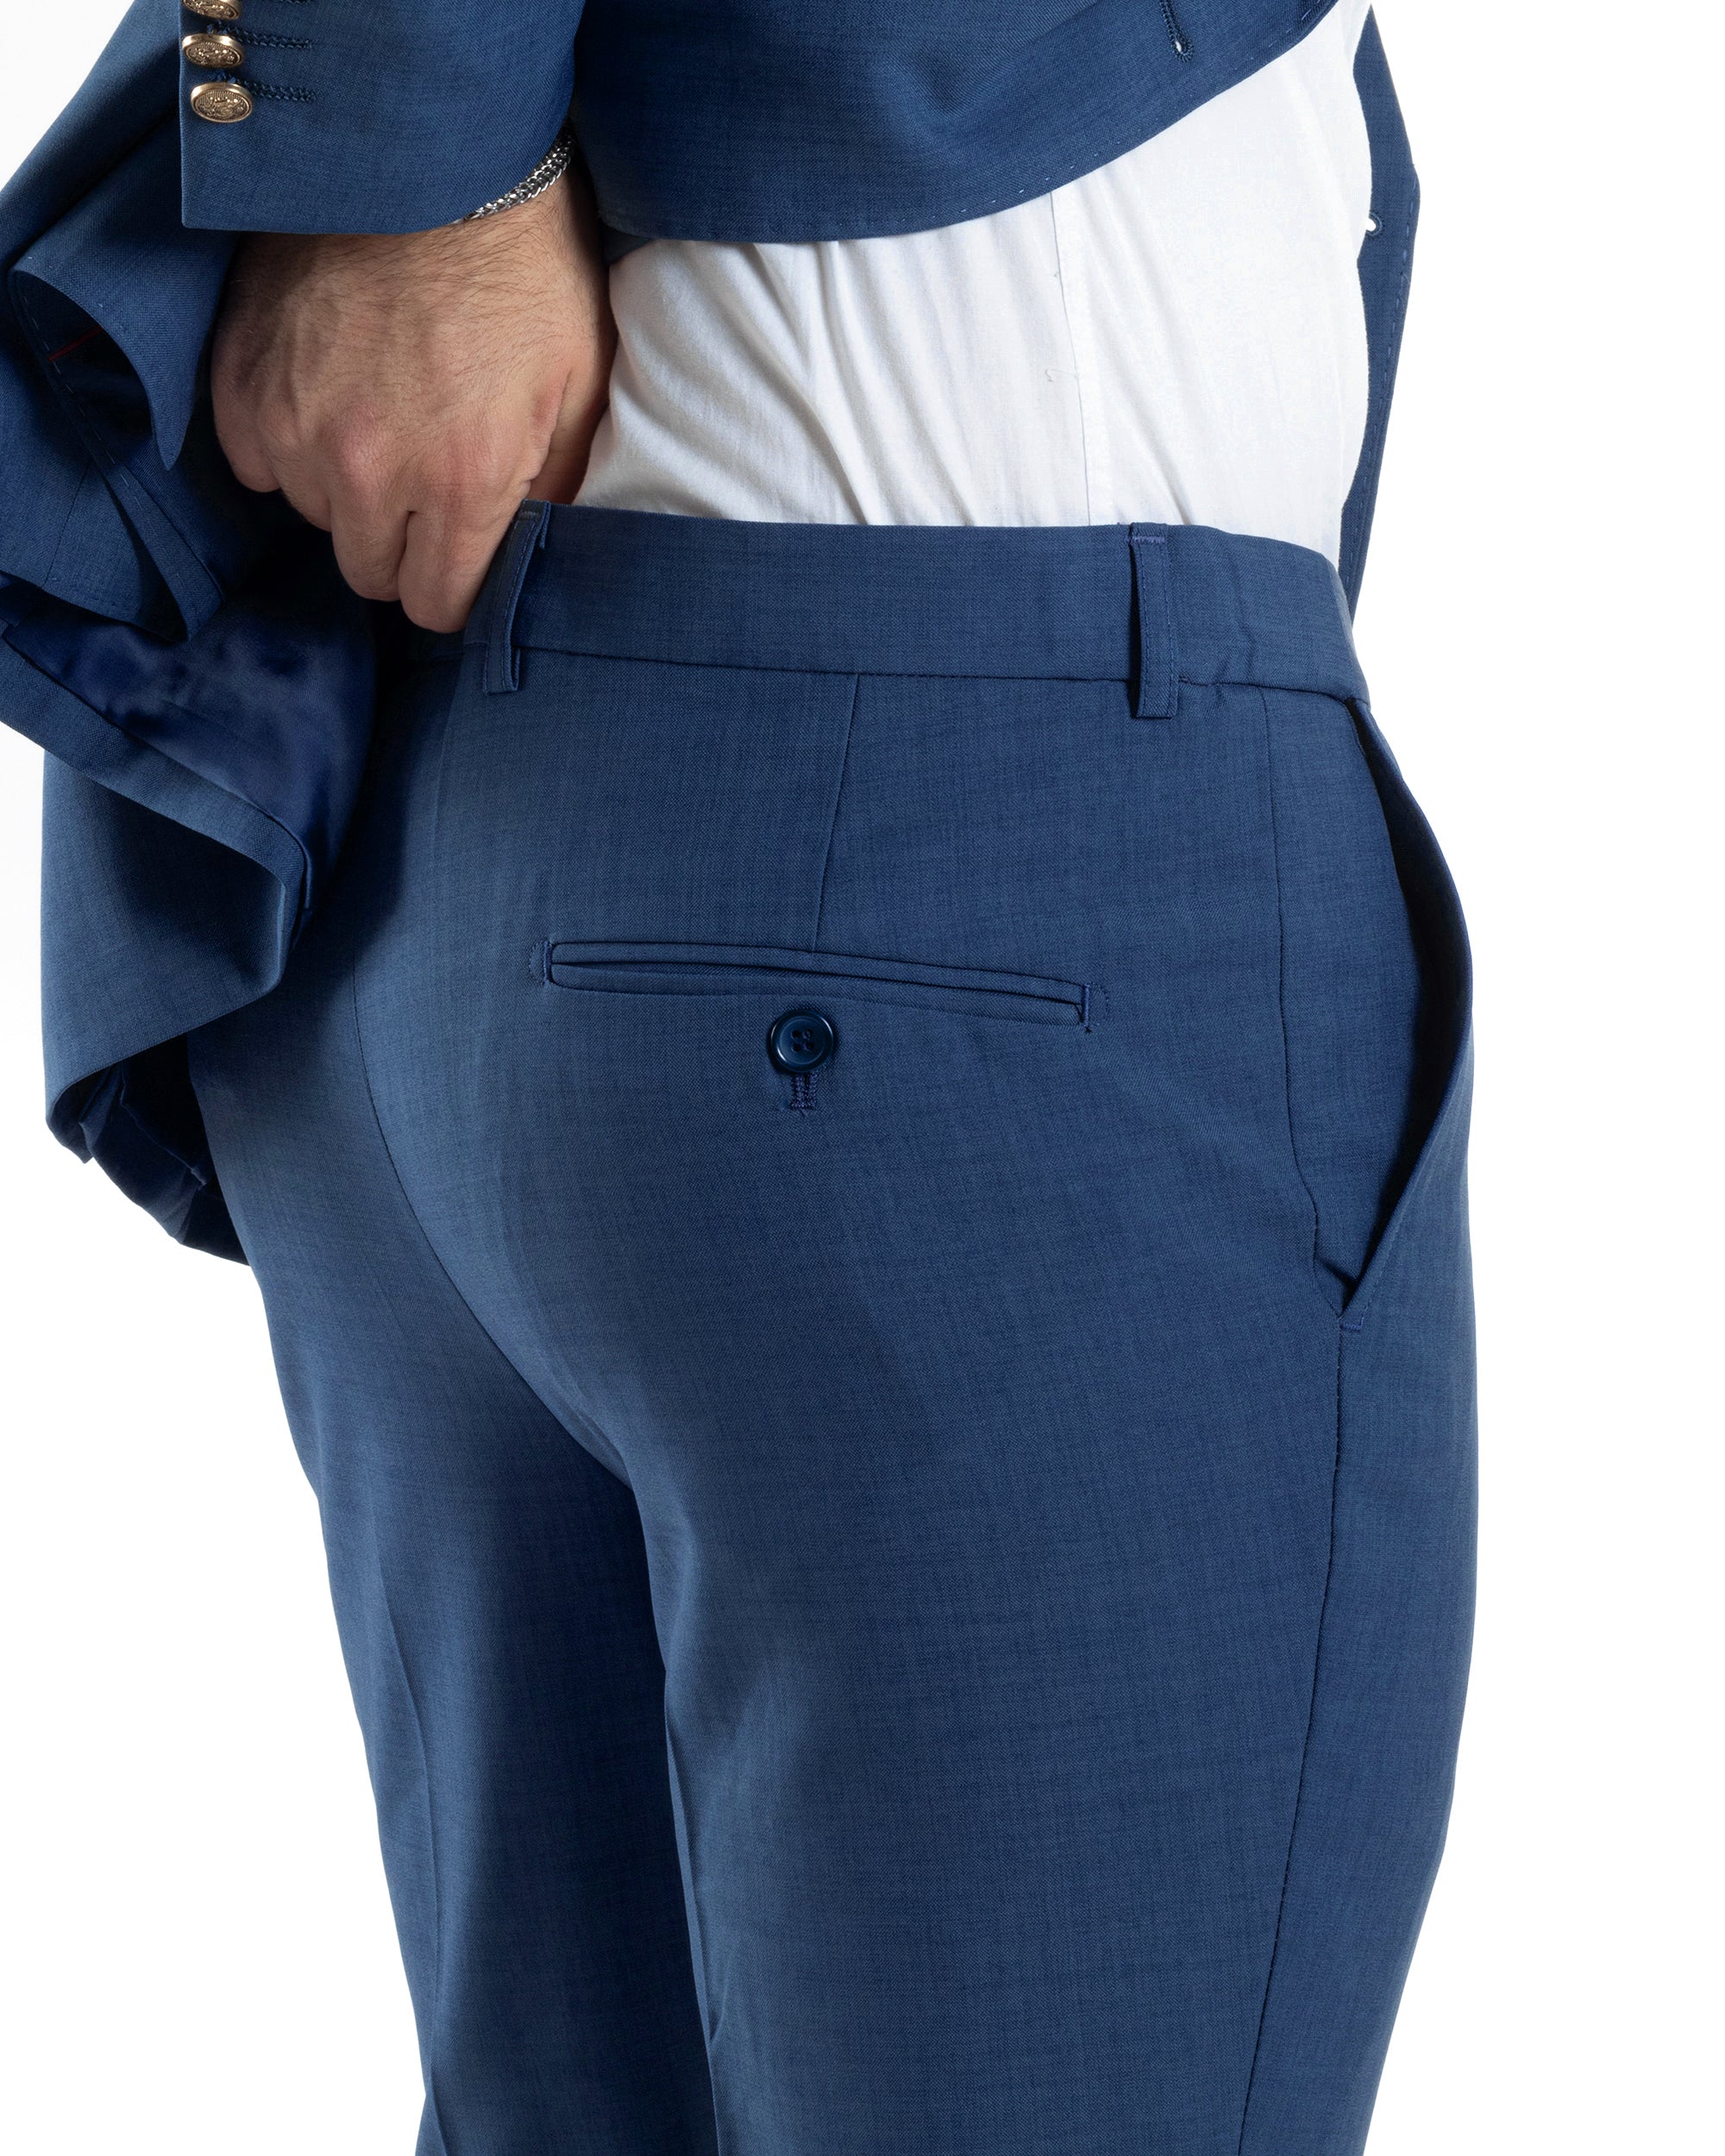 Abito Uomo Doppiopetto Vestito Completo Giacca Pantaloni Bottoni Metallo Blu Melangiato Elegante Casual GIOSAL-AE1056A